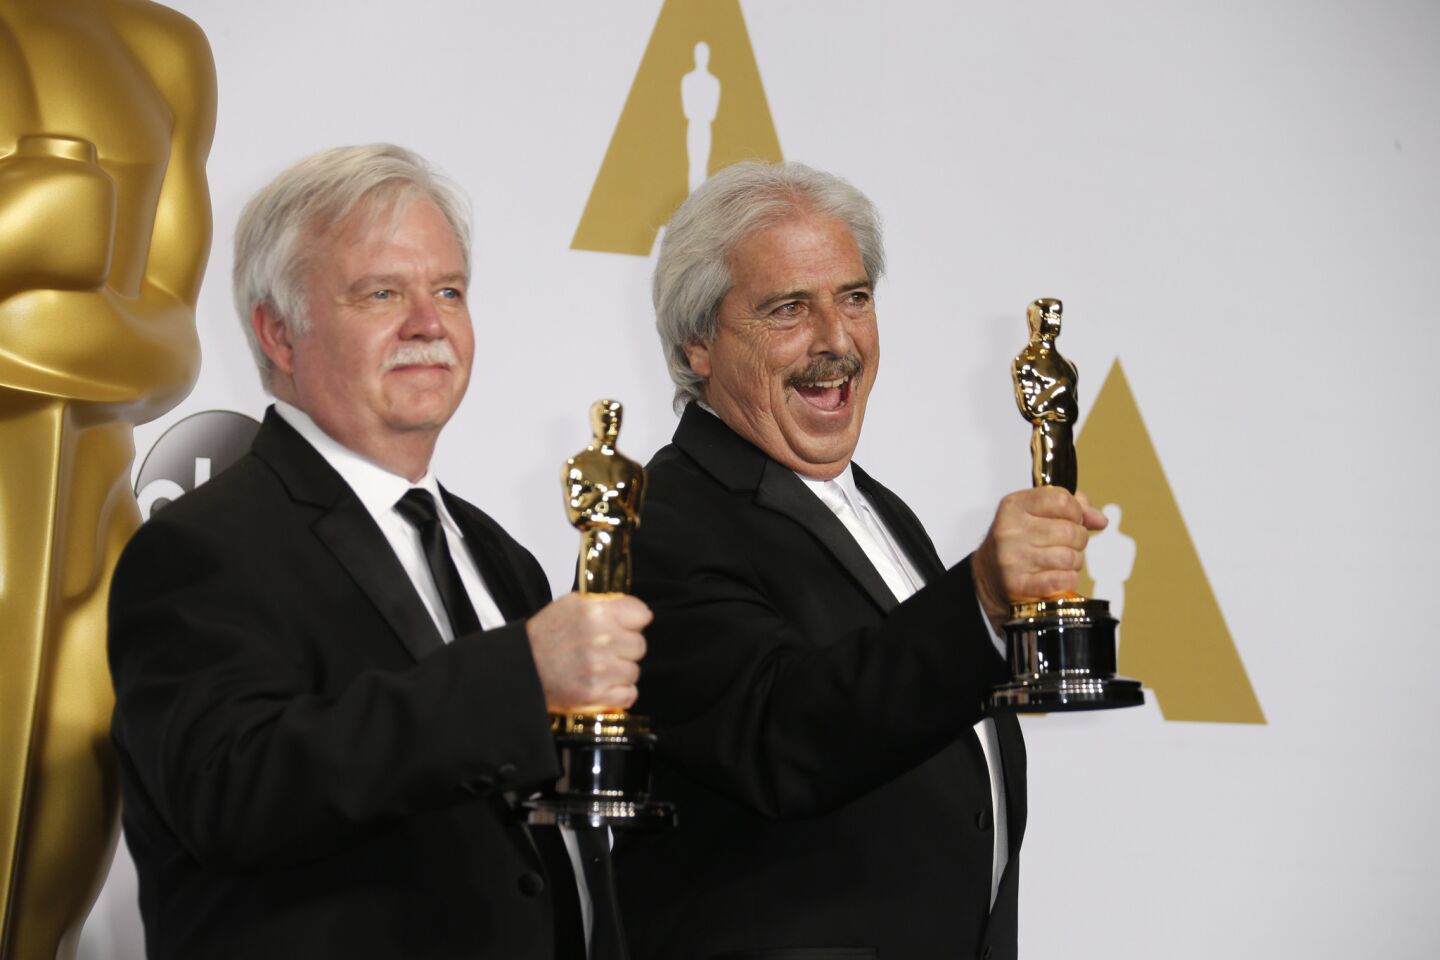 Oscars 2015 winners' room | Bub Asman and Alan Robert Murray